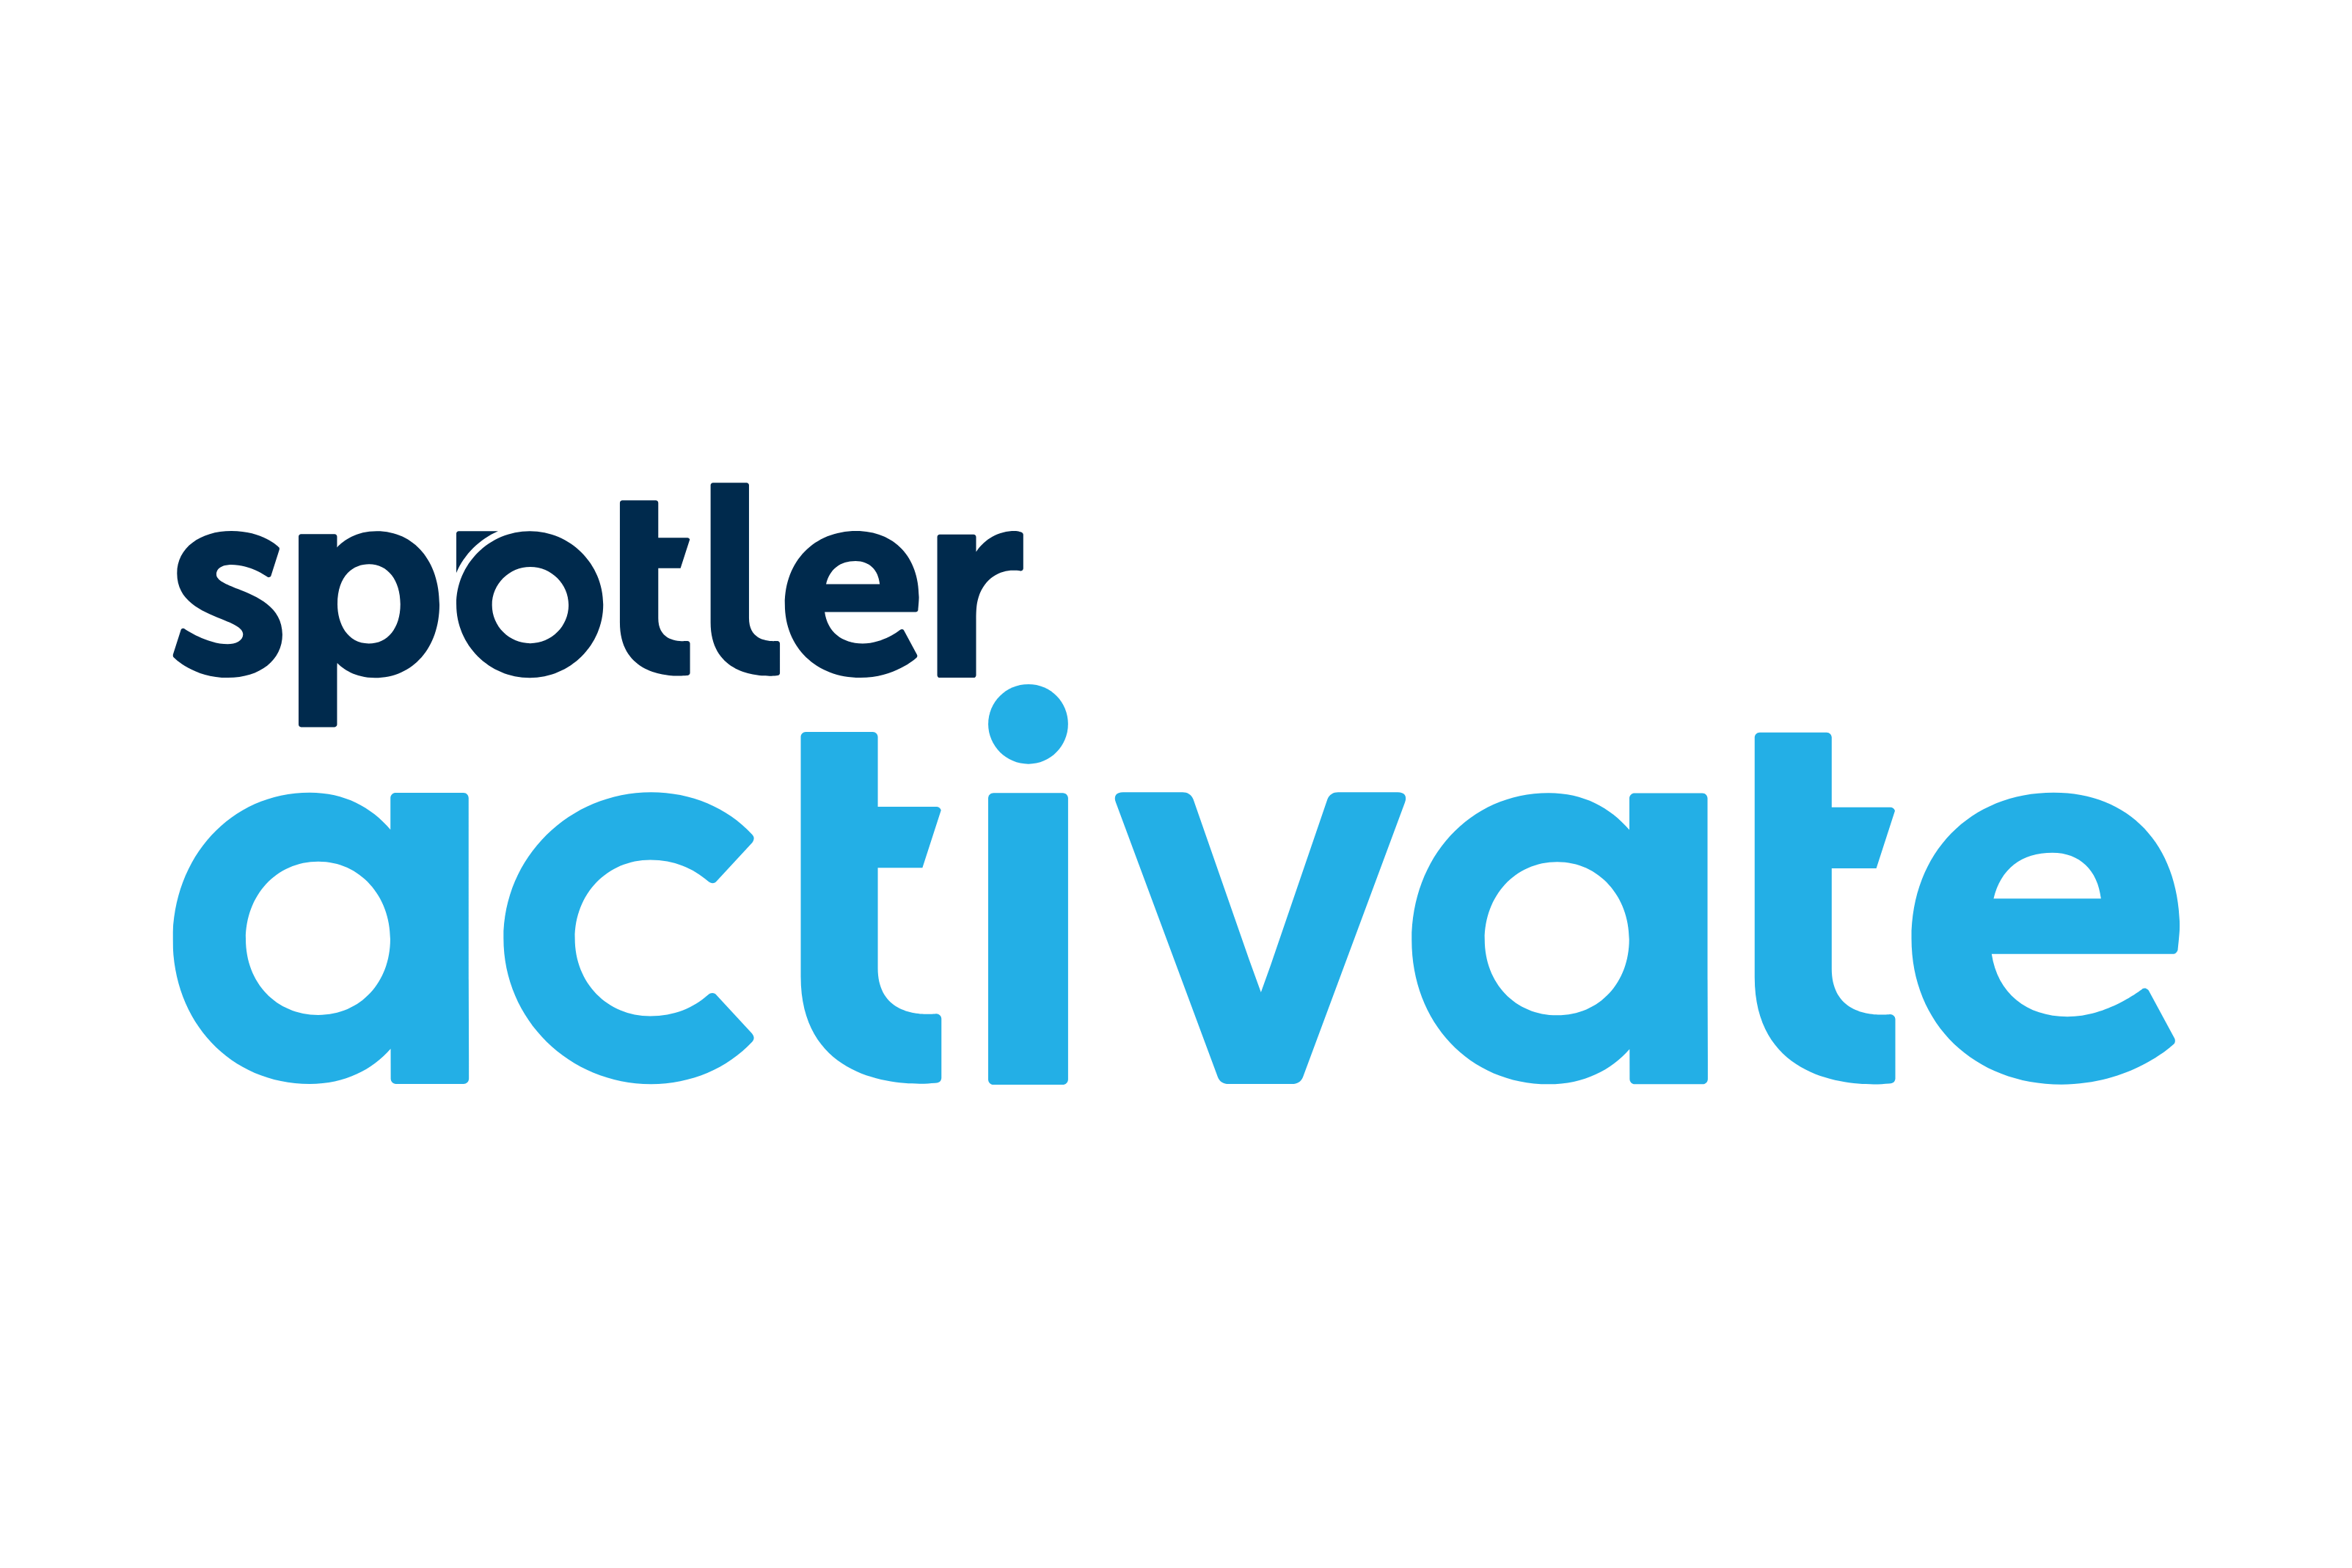 Spotler-activate-logo